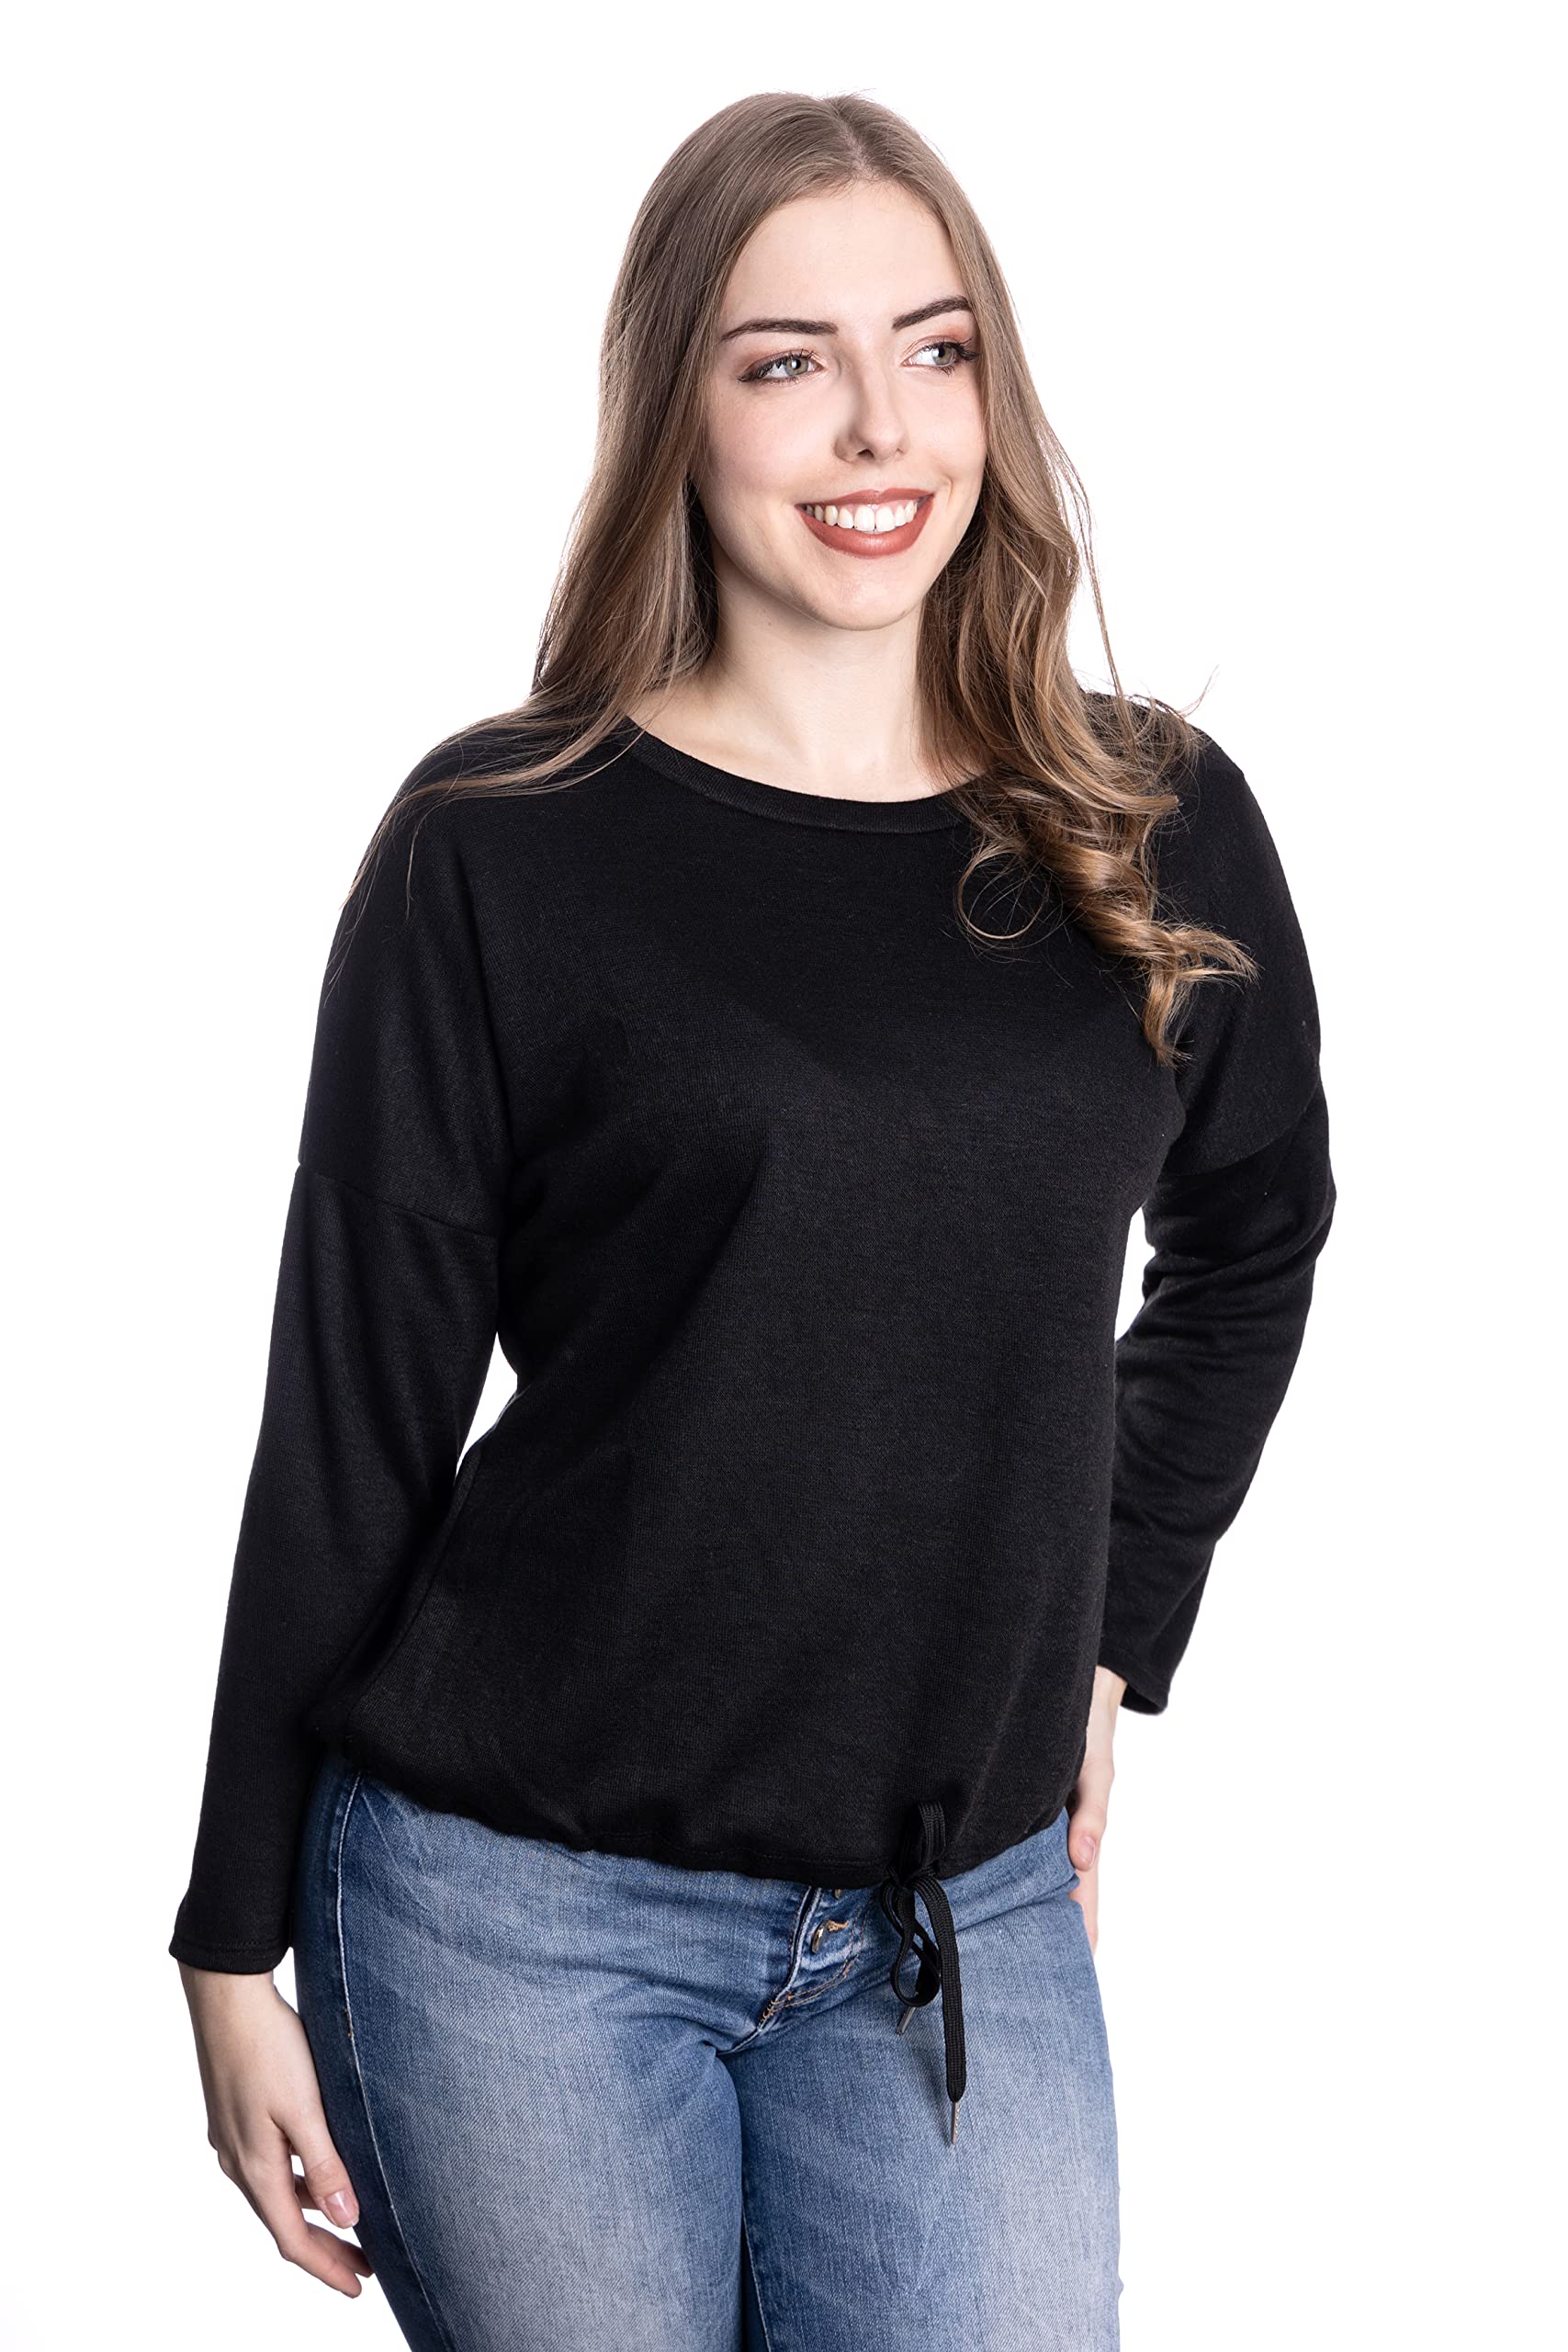 WOMEN'S WEAR U&F FASHIONSTORE U&F Damen Sweatshirt | Shirt für Freizeit und Homewear | Lässiger Pullover mit Rundhalsausschnitt Schwarz Grösse M